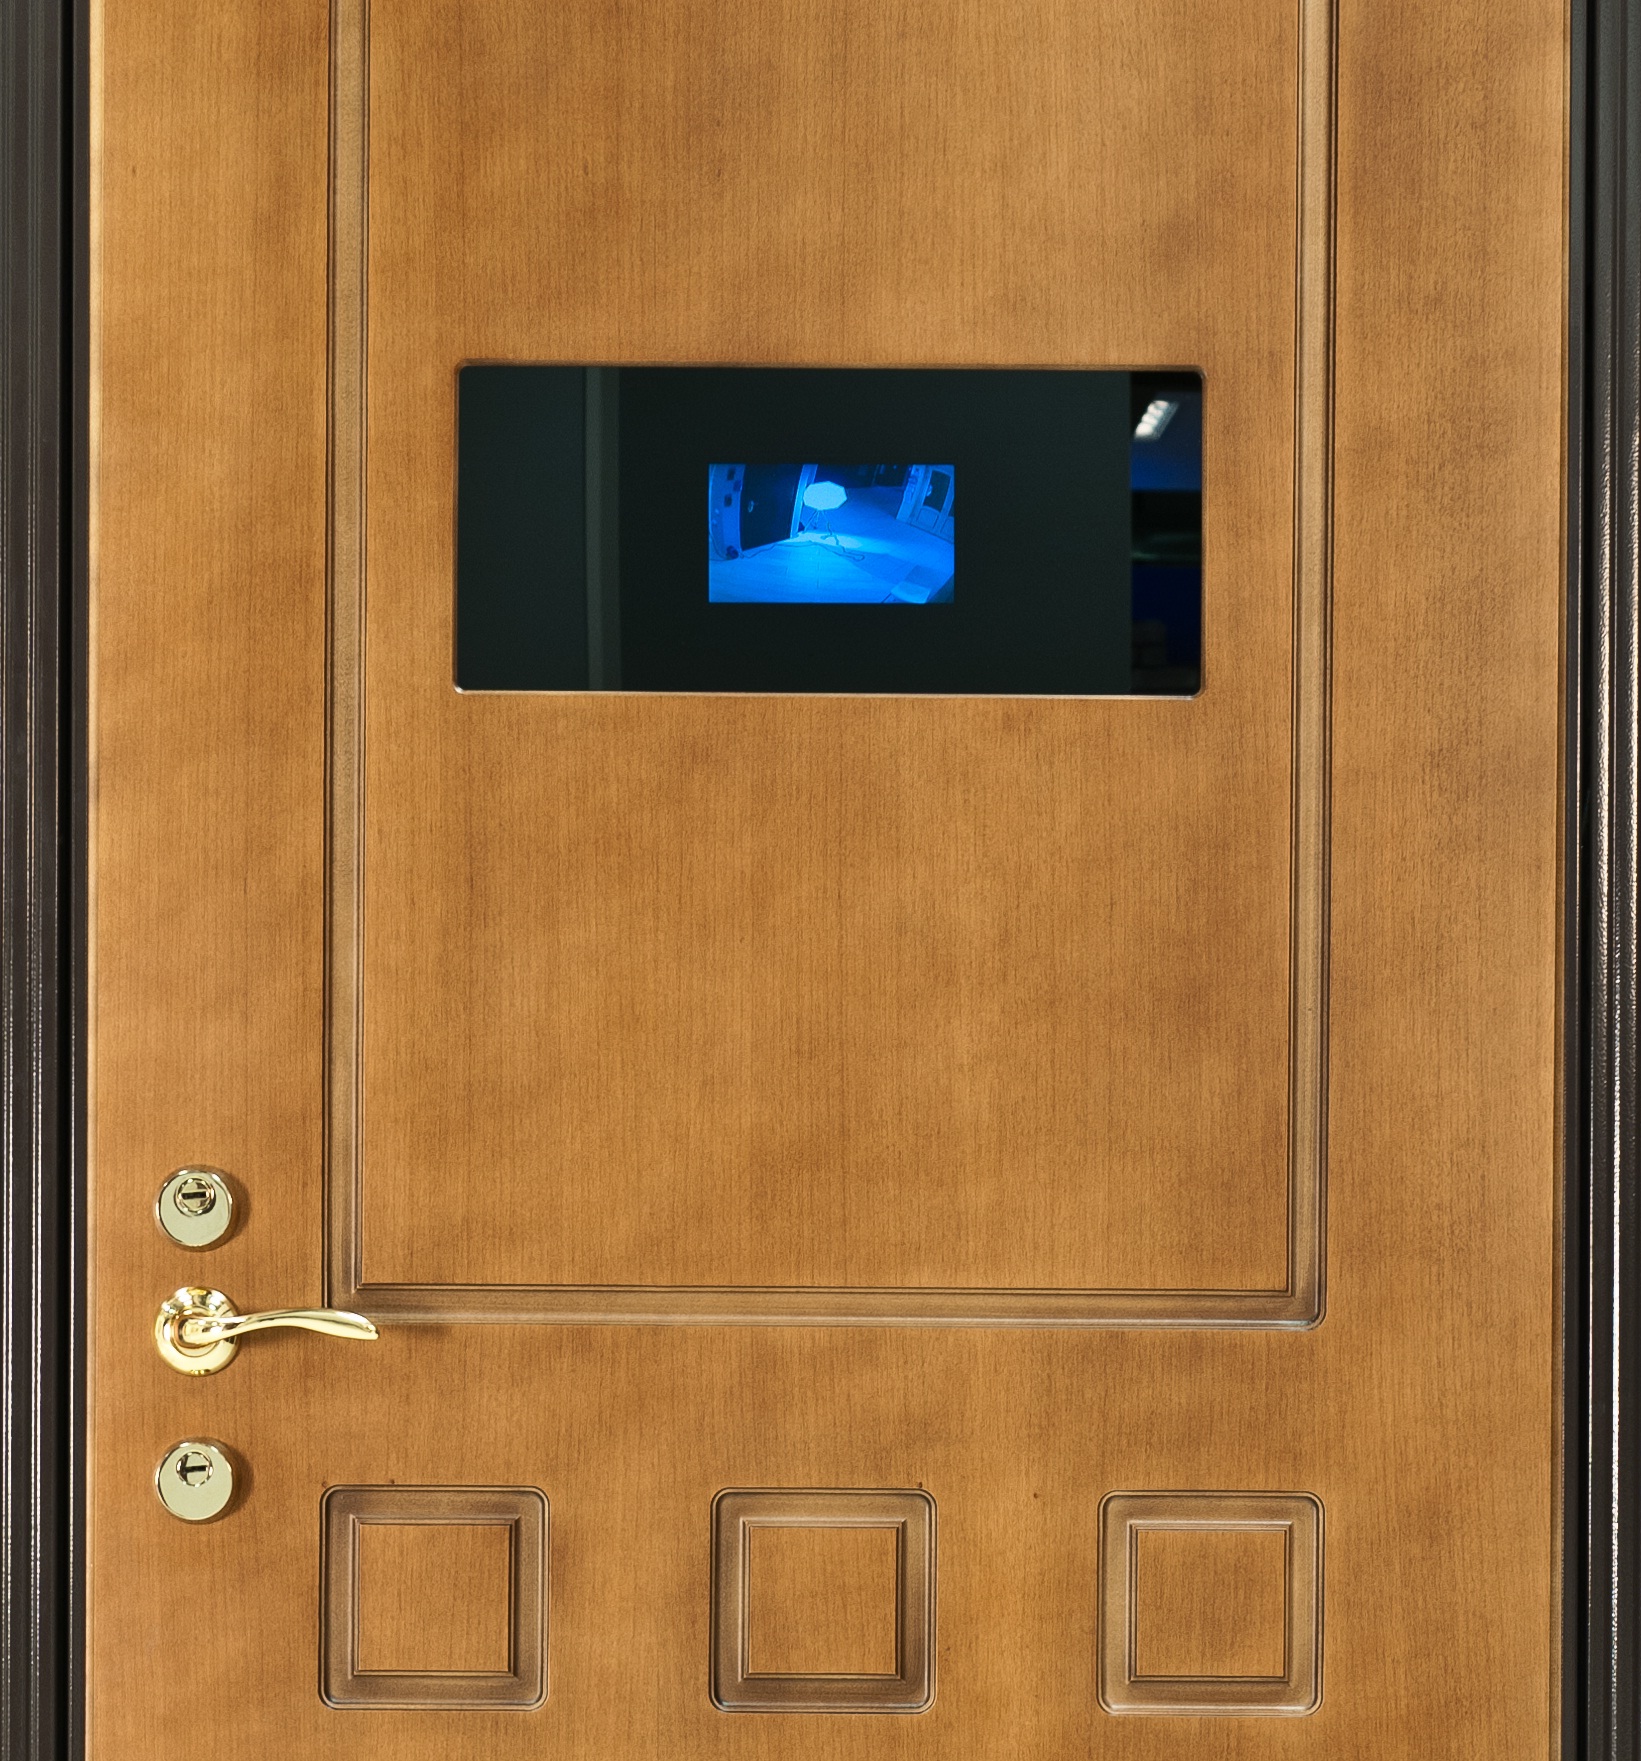 Установить глазок дверь. Входные двери с видеоглазком и монитором. Входная дверь с видеонаблюдением. Входная дверь со встроенным видеодомофоном. Дверь со встроенной камерой.